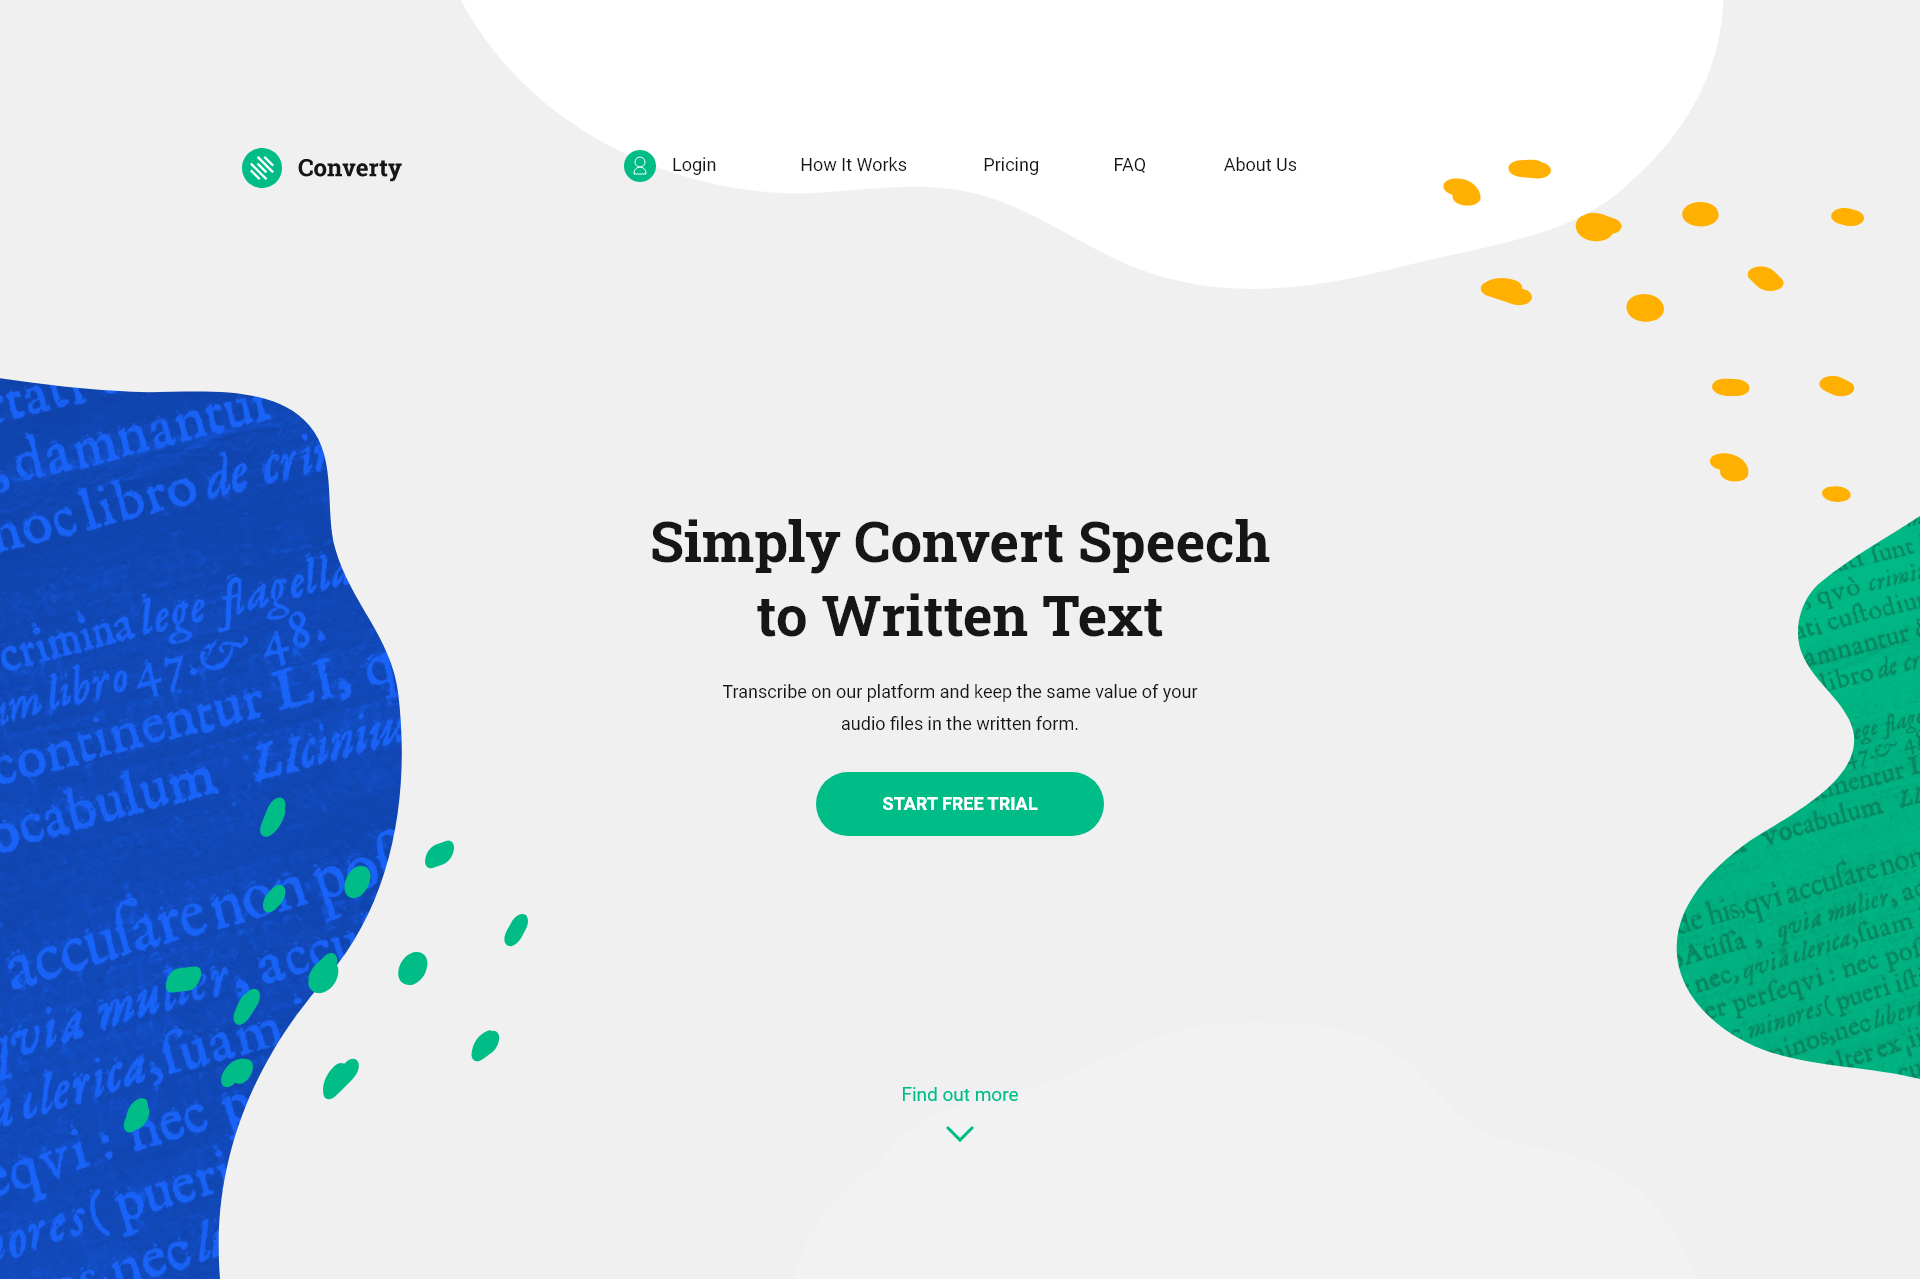 Simply convert speech to written text